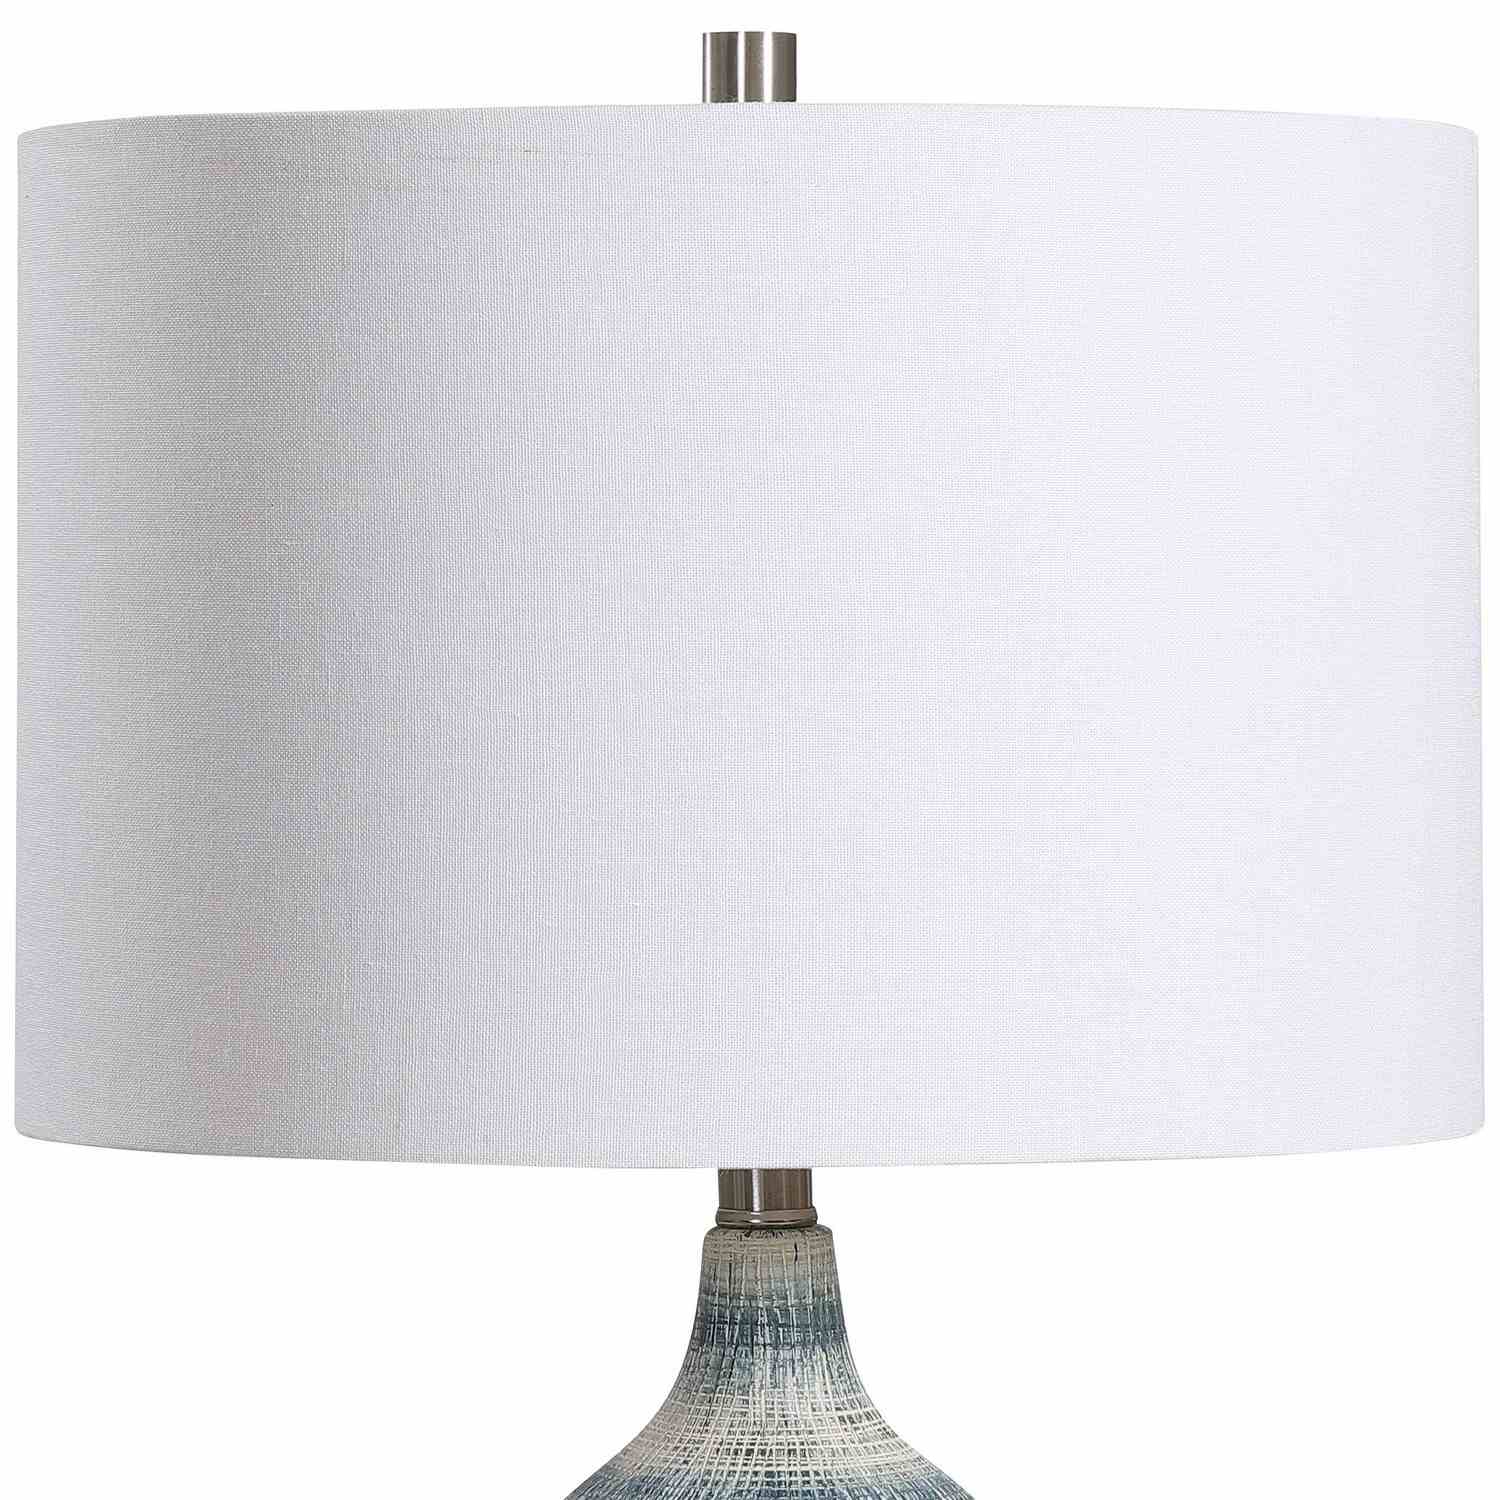 ABC Accent ABC-26067-1 Table Lamp - Ceramic